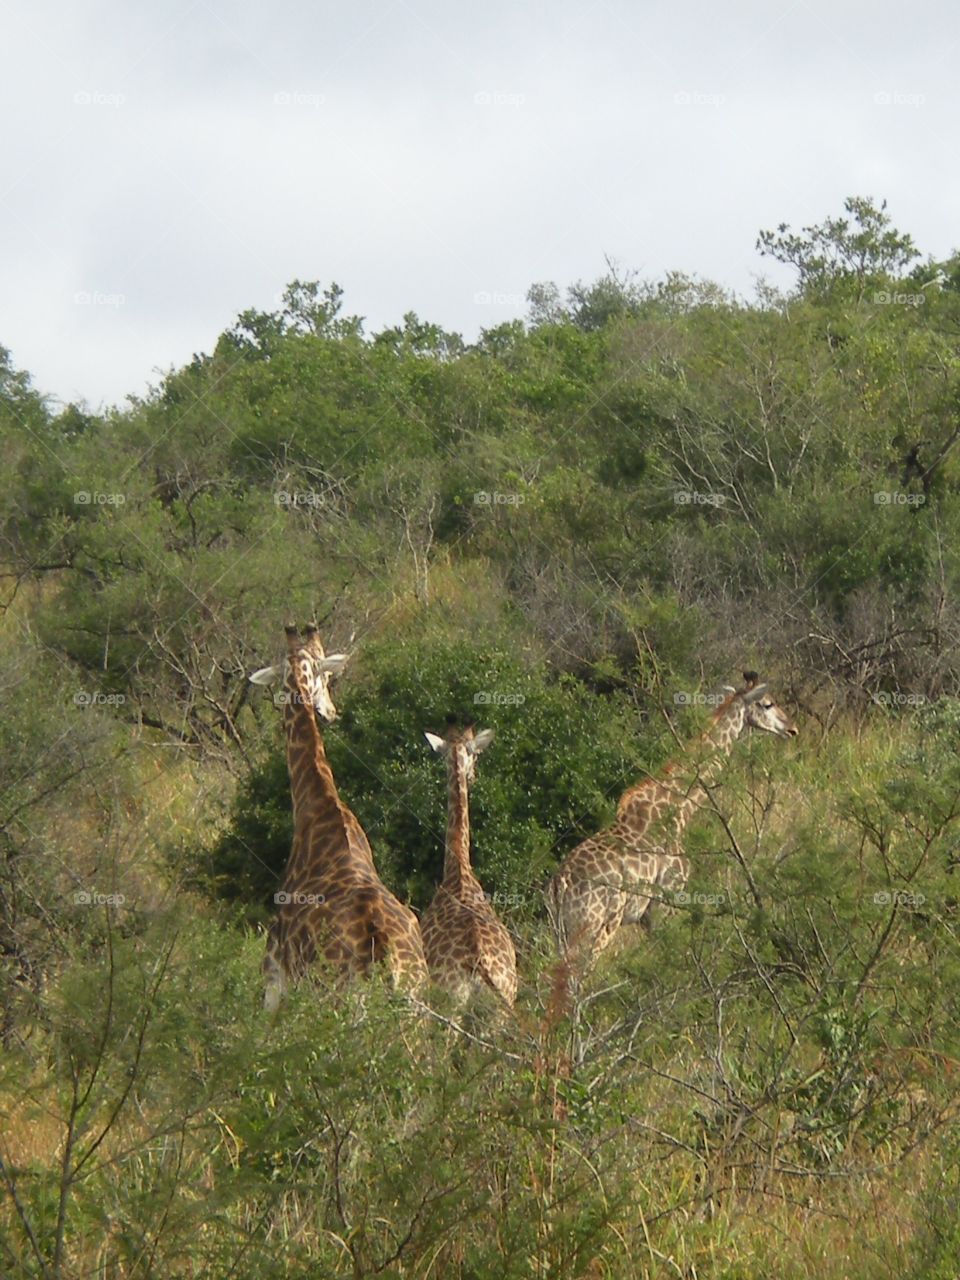 Giraffe family 